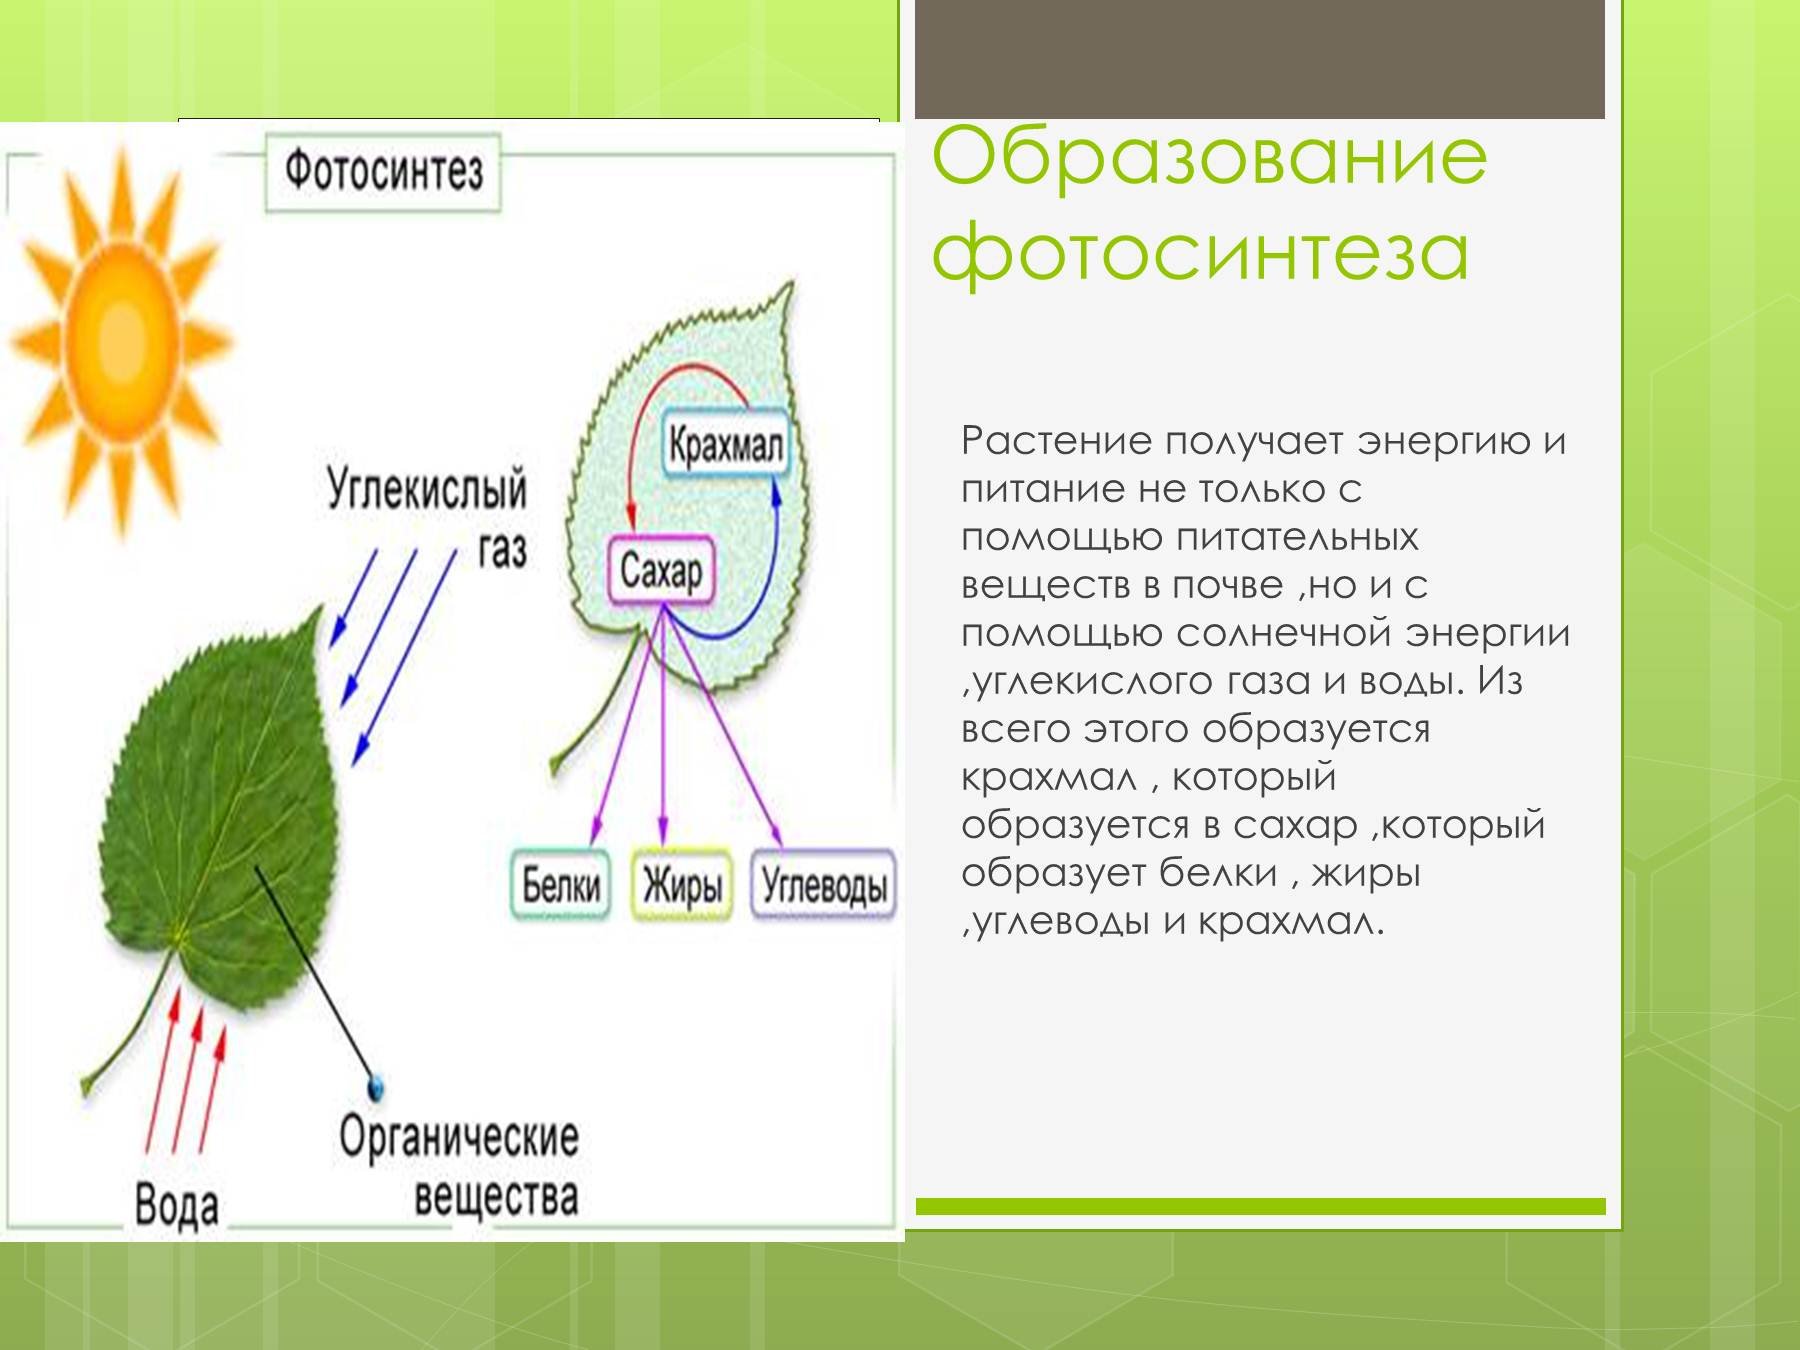 Процесс дыхания растений. Схема фотосинтеза 6 класс биология. Схема фотосинтеза 6 класс биология схема. Фотосинтез растений 6 класс биология. Фотосинтез и дыхание растений 6 класс.